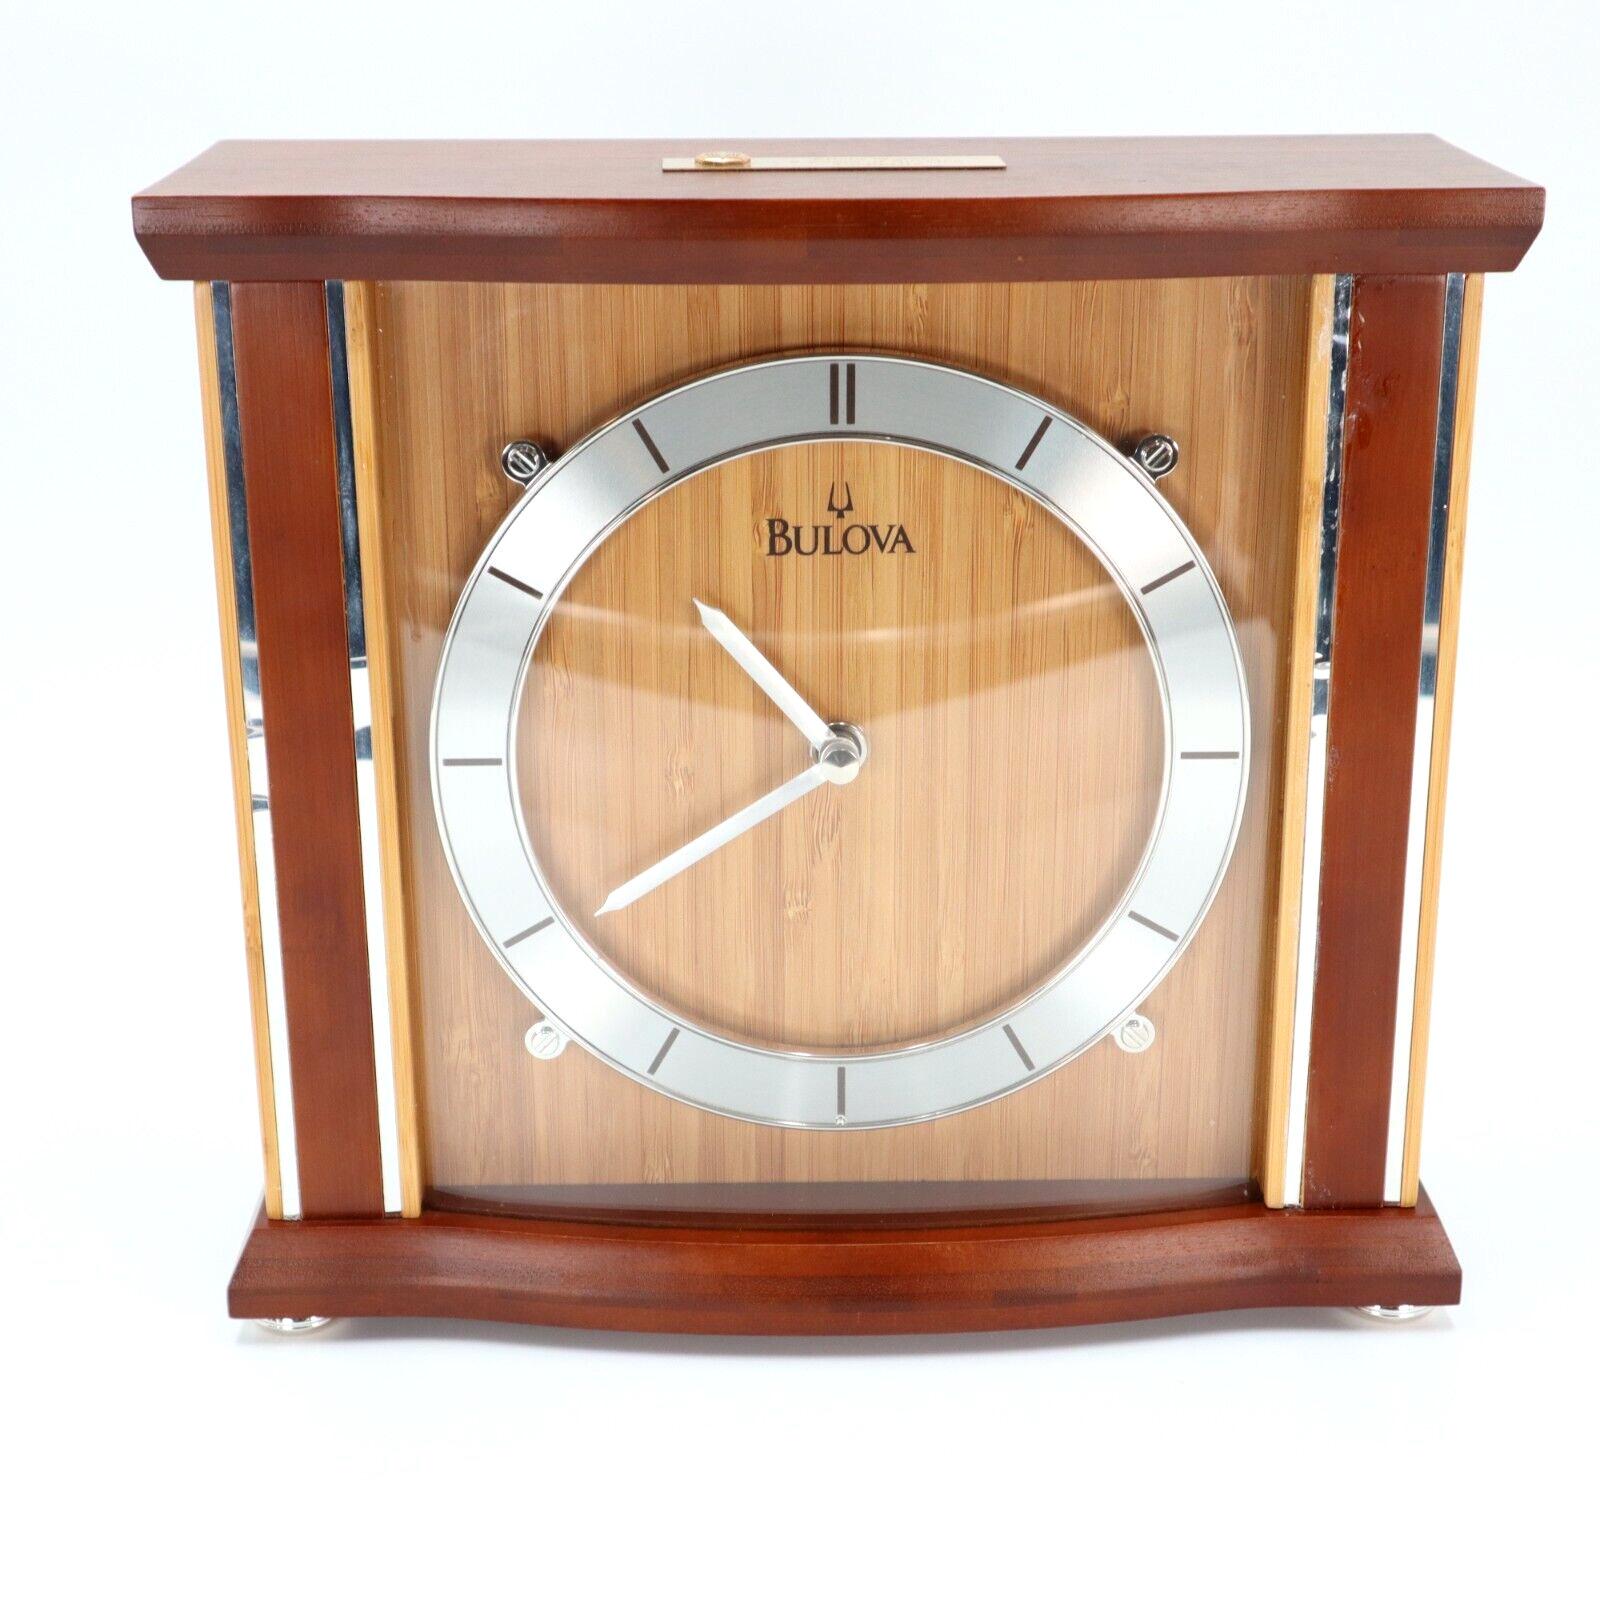 Bulova Empire Bamboo Mantel Clock Quartz 9.5 x 10 Inches Brown Silver